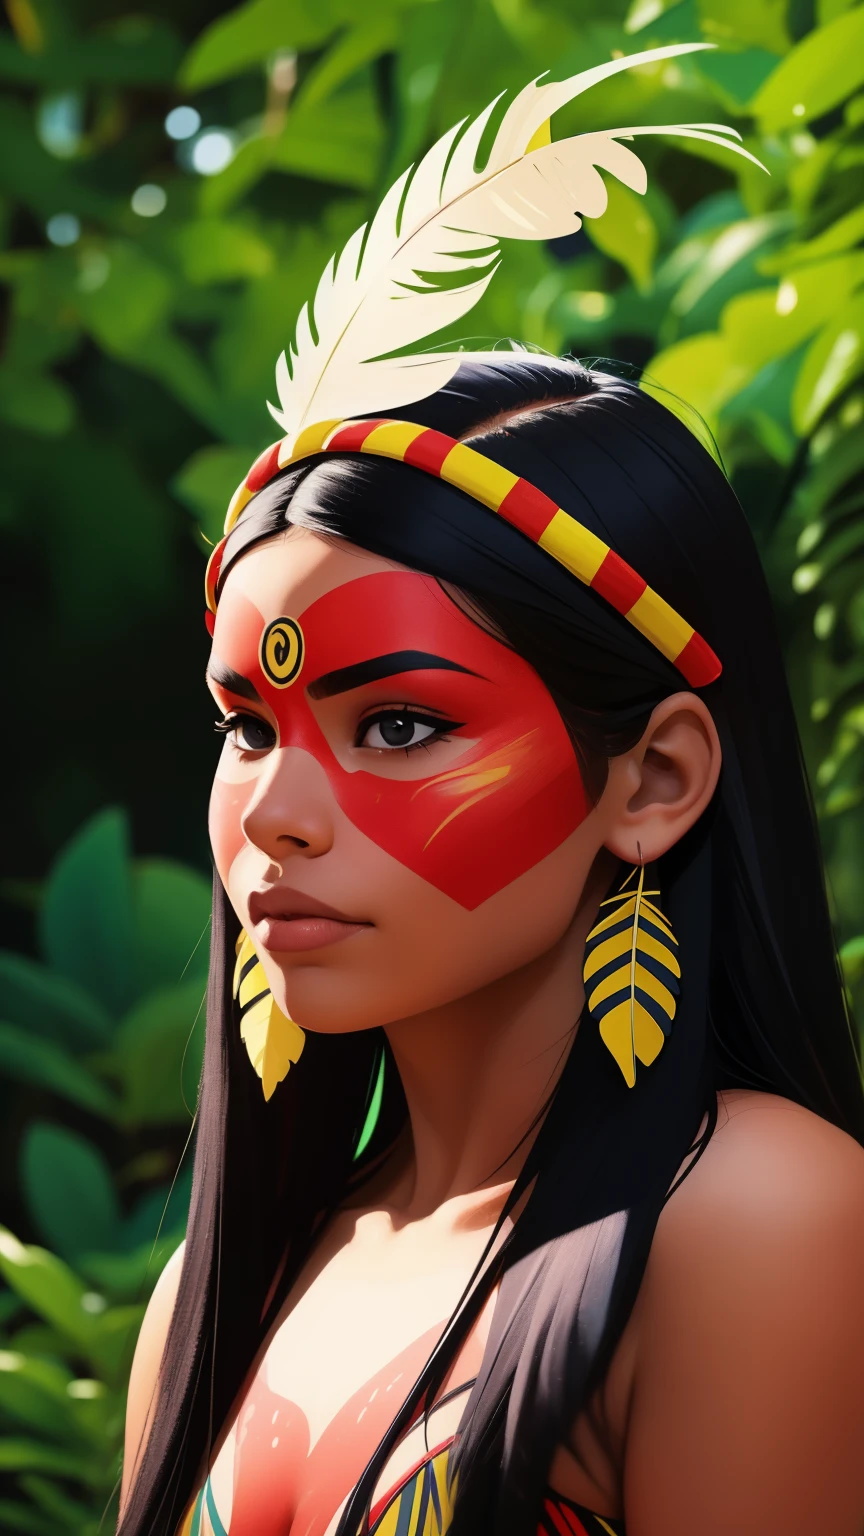 コミックアート, デジタルペイント. 頭に羽根と羽をつけたネイティブの美しい先住民の少女, ブラジルのアマゾン先住民, 美しい若い女性ブラジル人ネイティブの少女, ペイント面, 熱い体, 典型的な衣装を着たヤノマミ族インディアン,高品質. アマゾンの森と川の背景. 鮮やかな色彩, 映画照明. 詳細, 複雑な, 詳細 face.